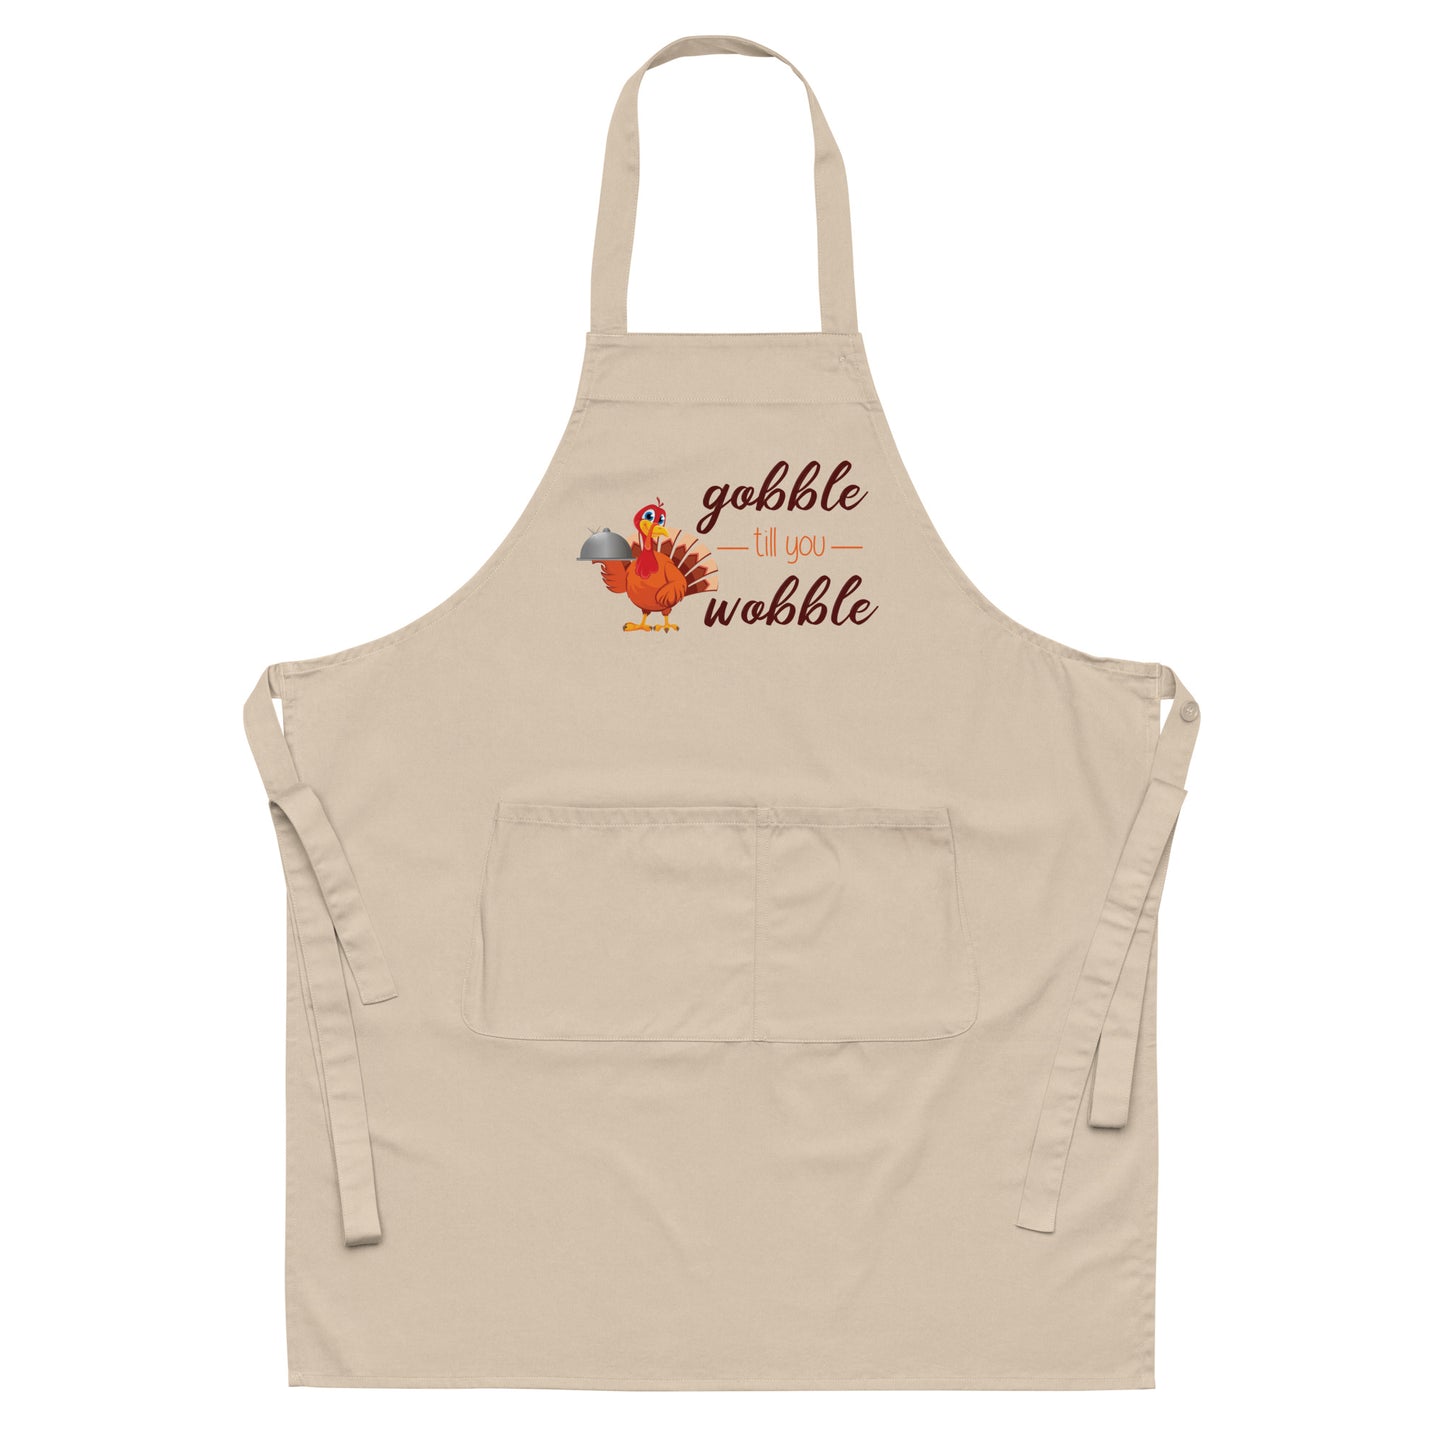 Gobble til you Wobble Organic cotton apron